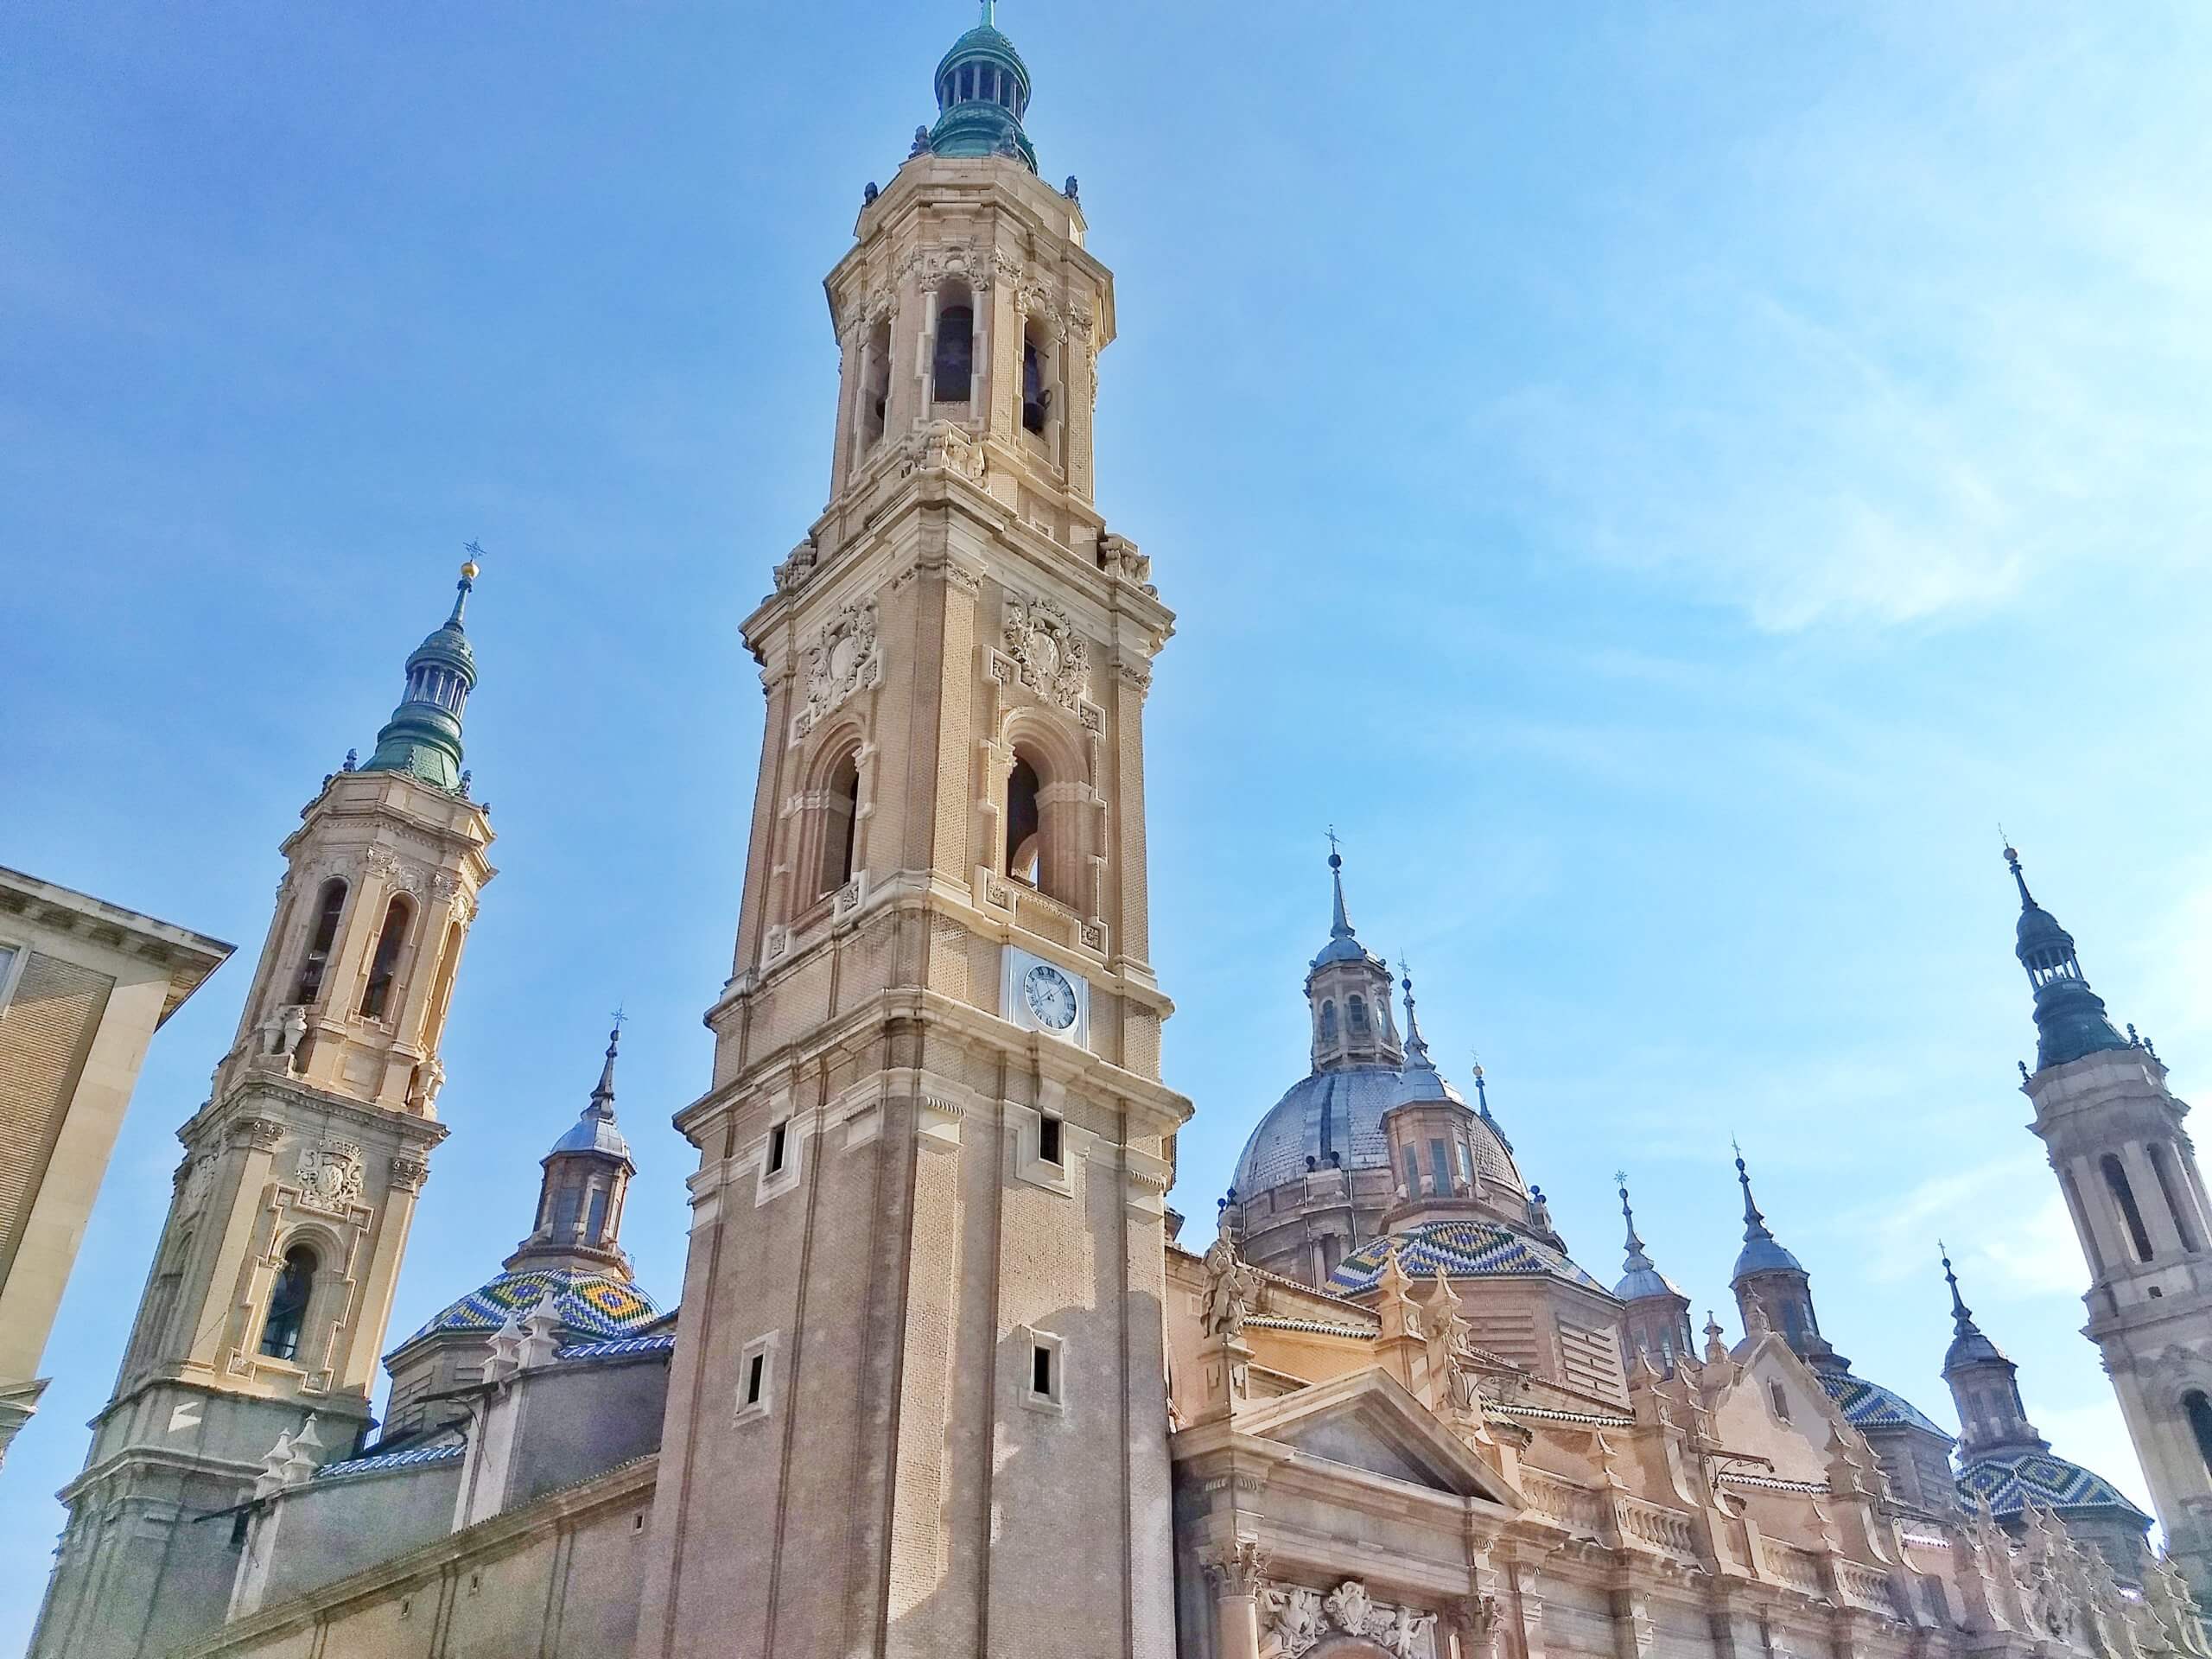 Zaragoza - Basilica de Nuestra Señora del Pilar